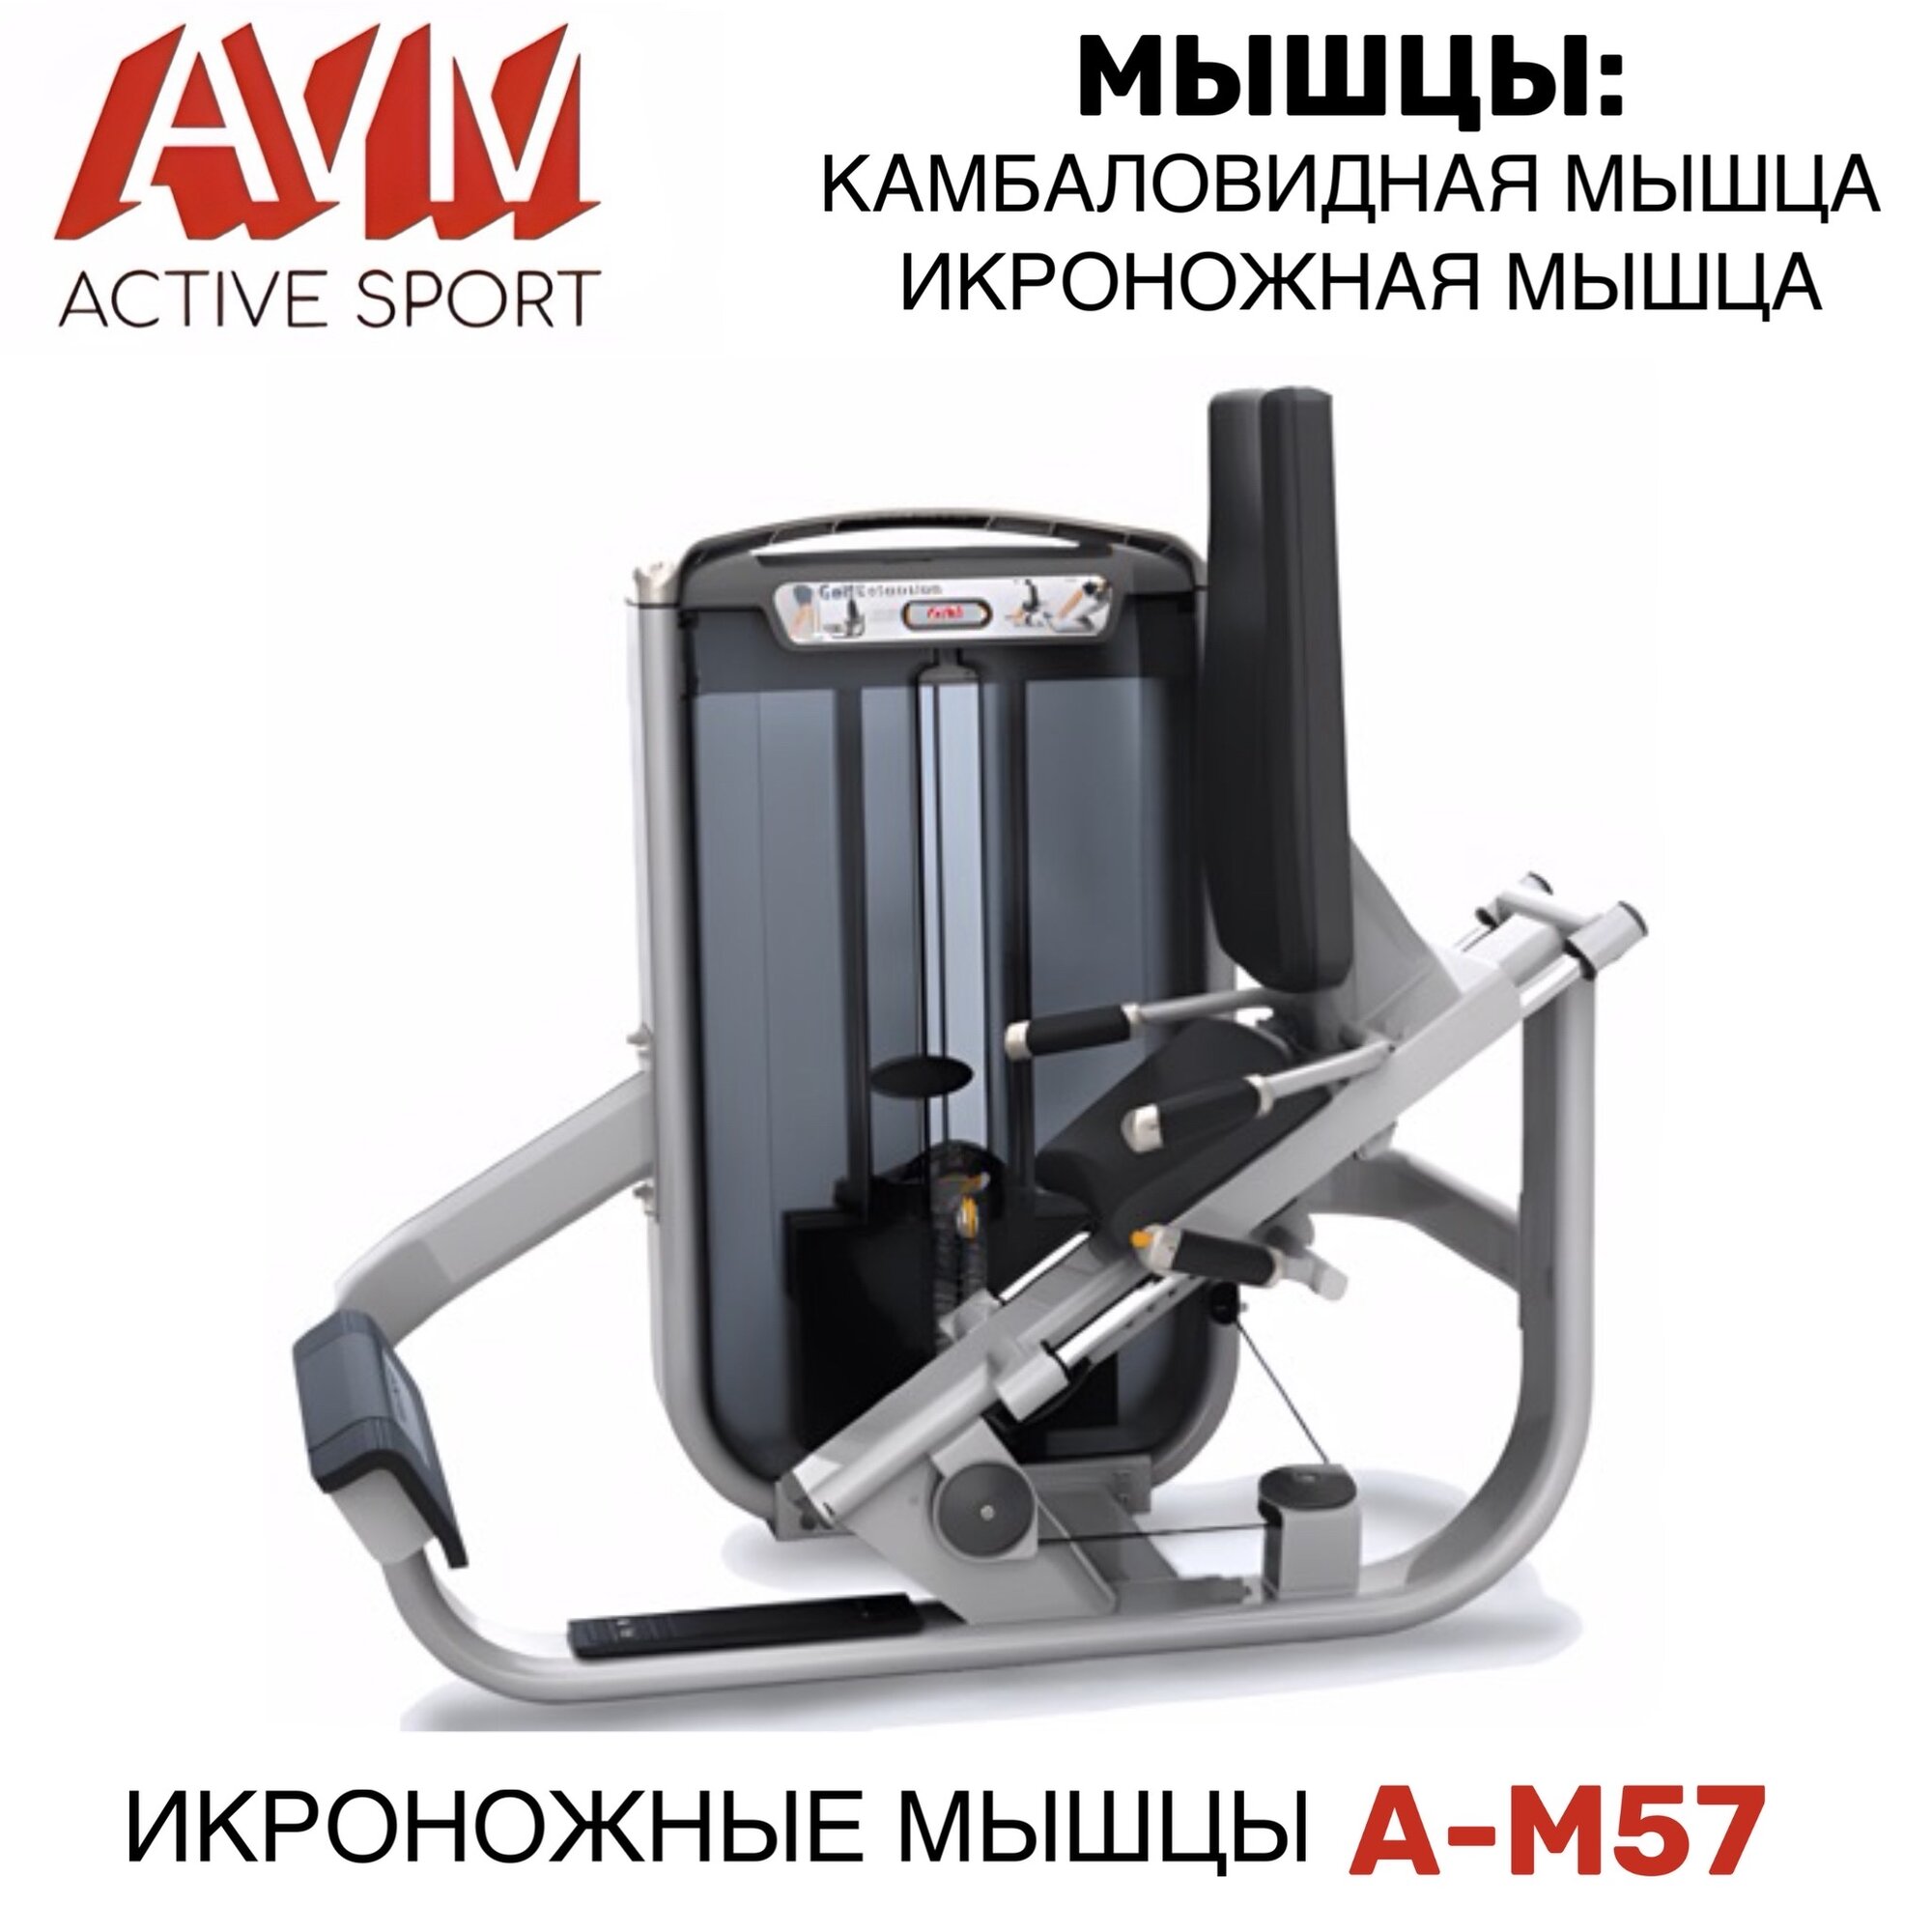 Профессиональный силовой тренажер для зала Икроножные мышцы A-M57